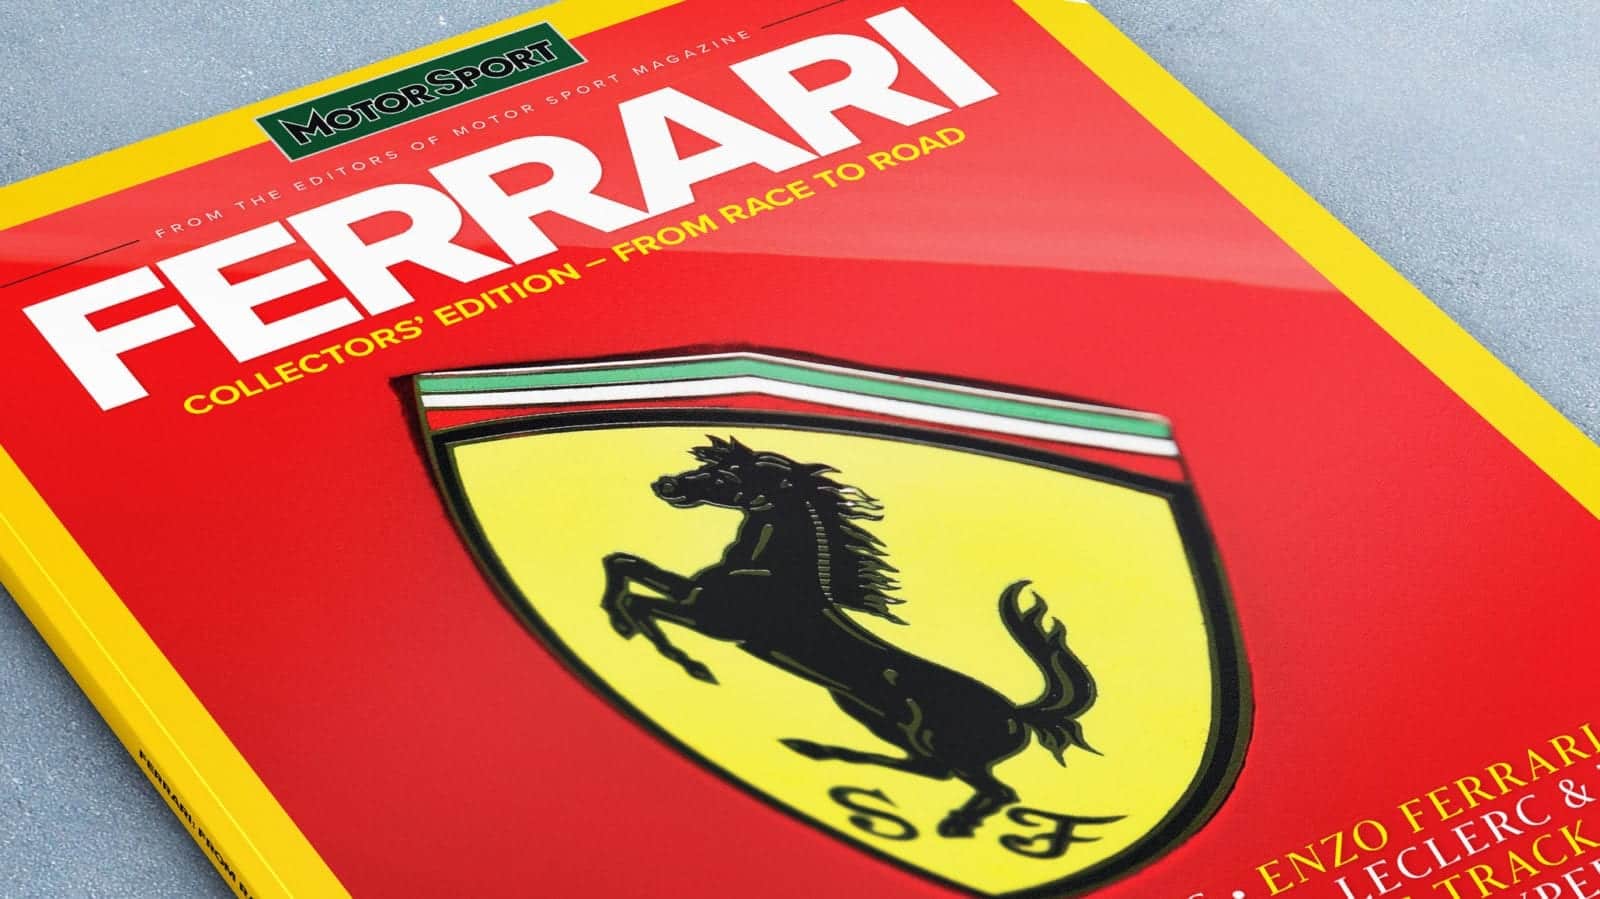 Ferrari bookazine header